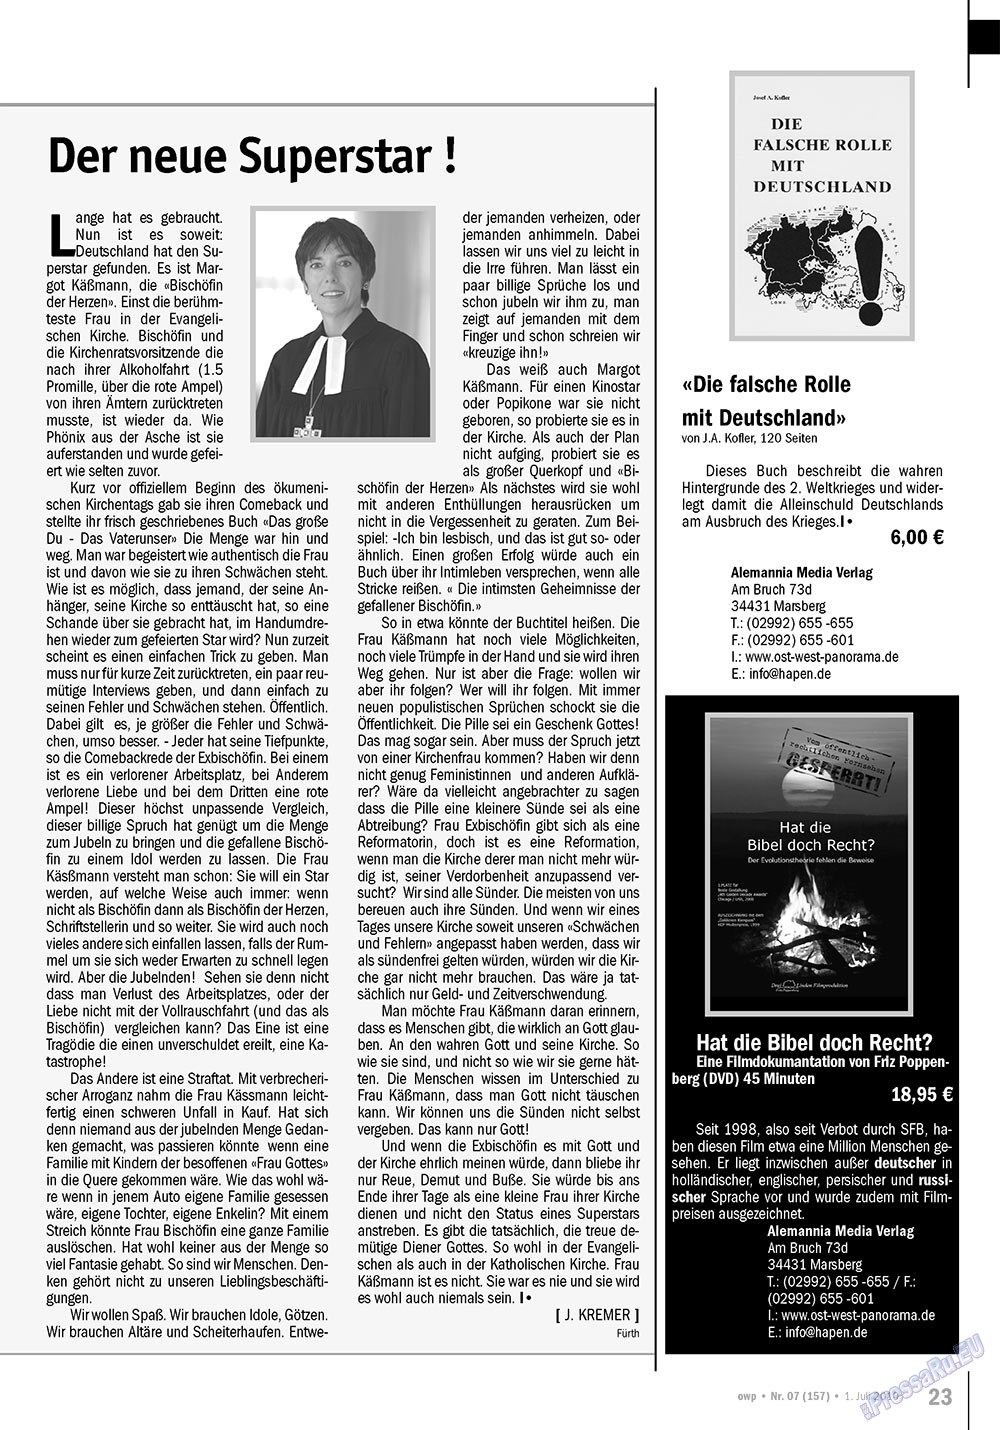 Ost-West Panorama (Zeitschrift). 2010 Jahr, Ausgabe 7, Seite 23